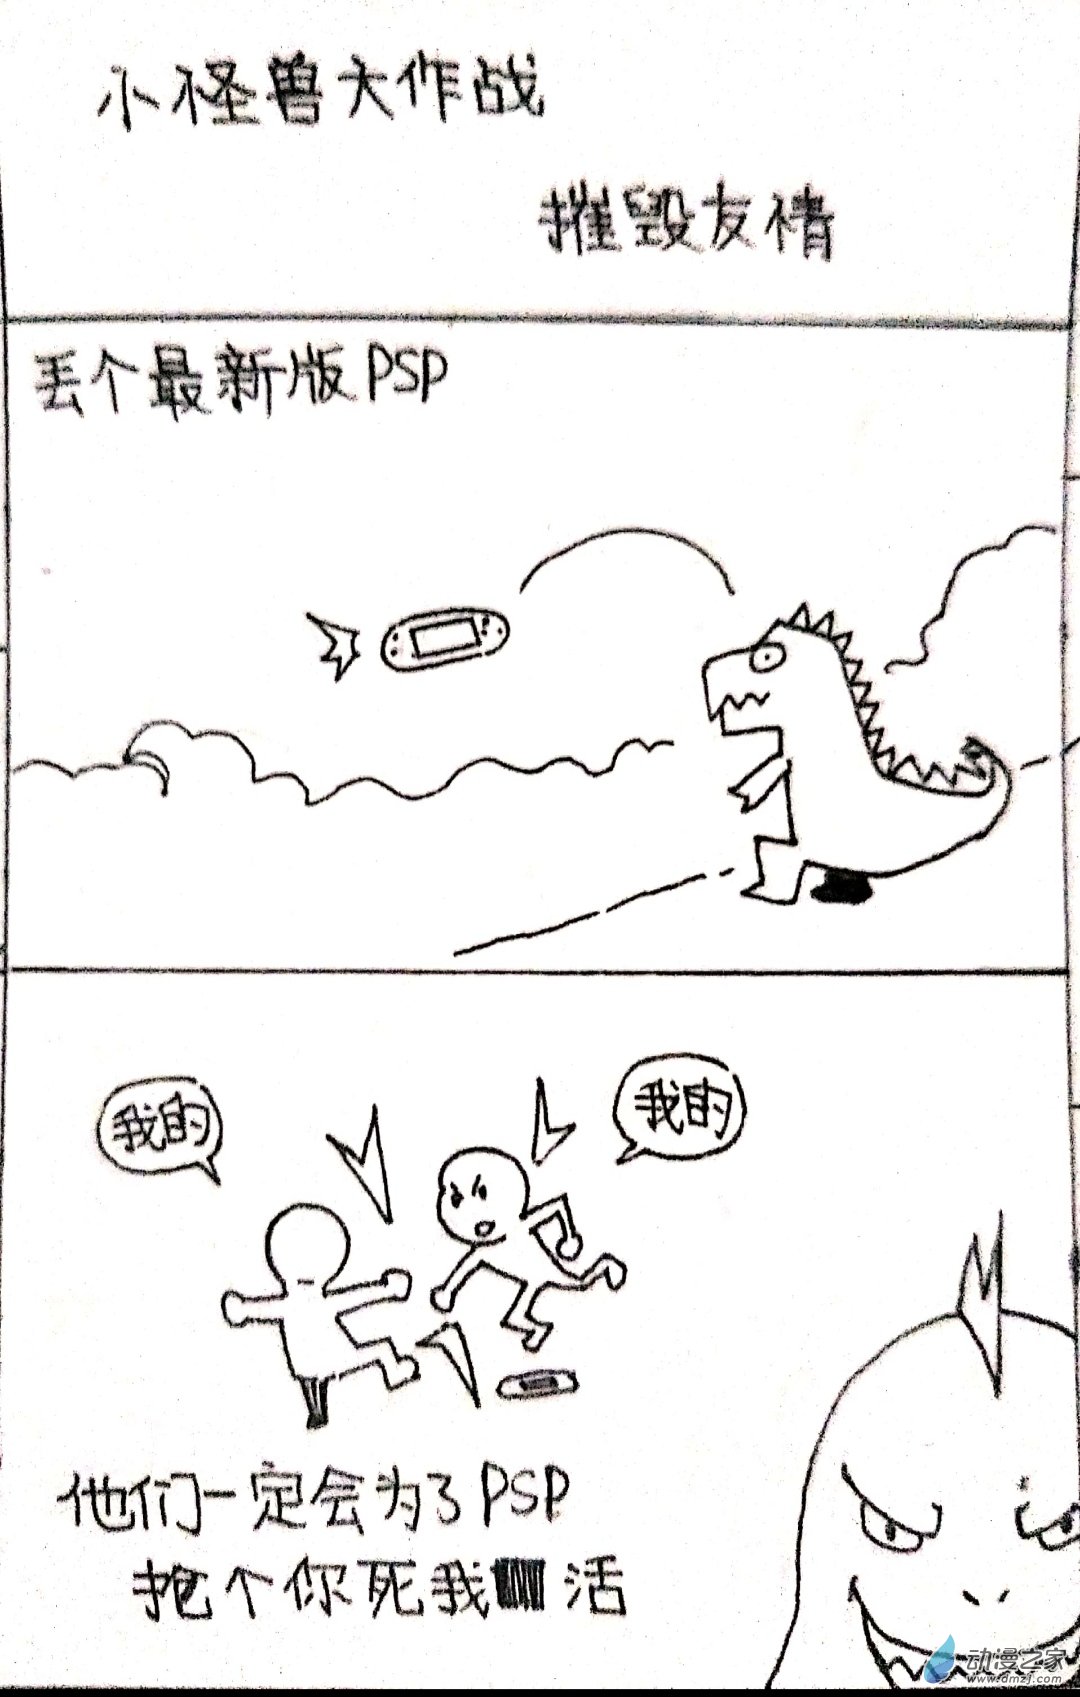 日刊漫畫 - 29 怪獸物語 - 2